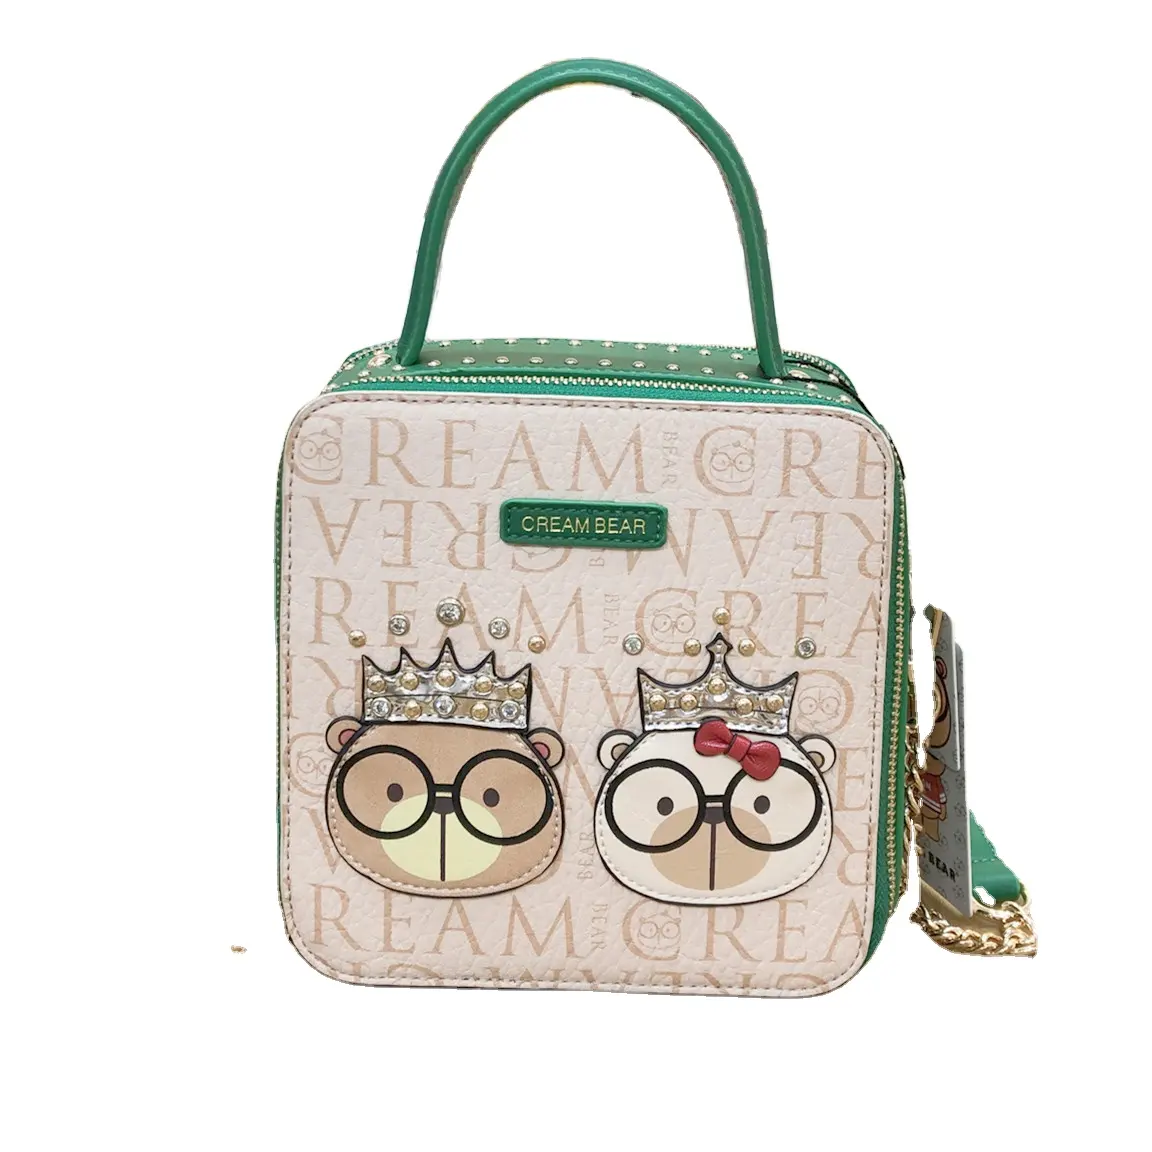 Cream bear and Sammao bag new green cartoon cute square handbag one shoulder cross body speedy bag